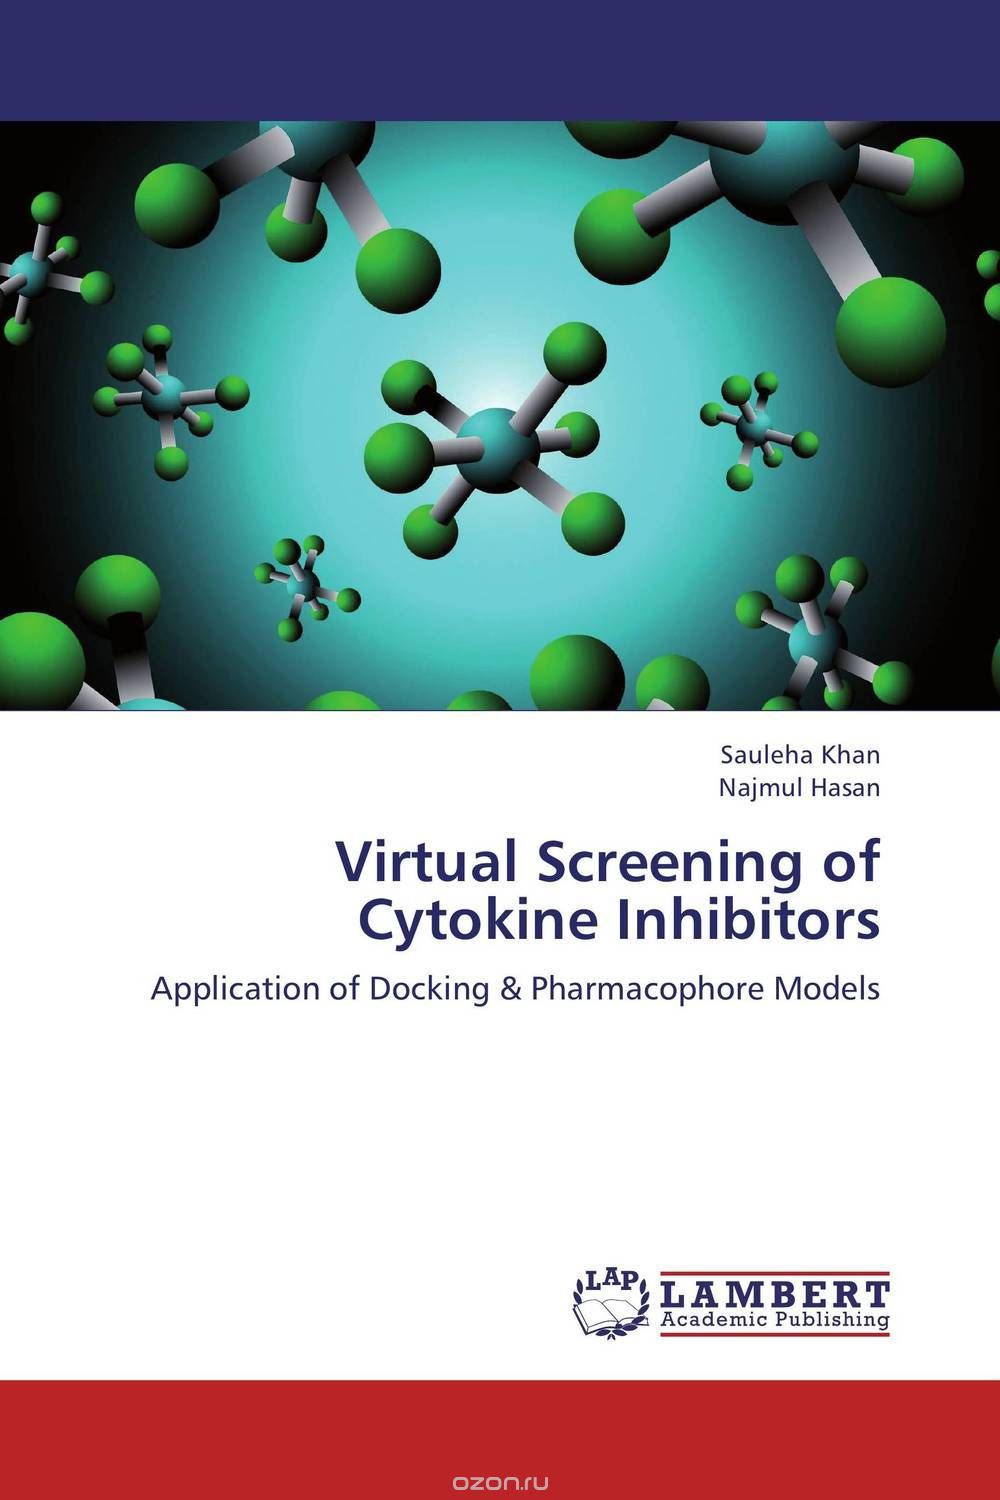 Скачать книгу "Virtual Screening of Cytokine Inhibitors"